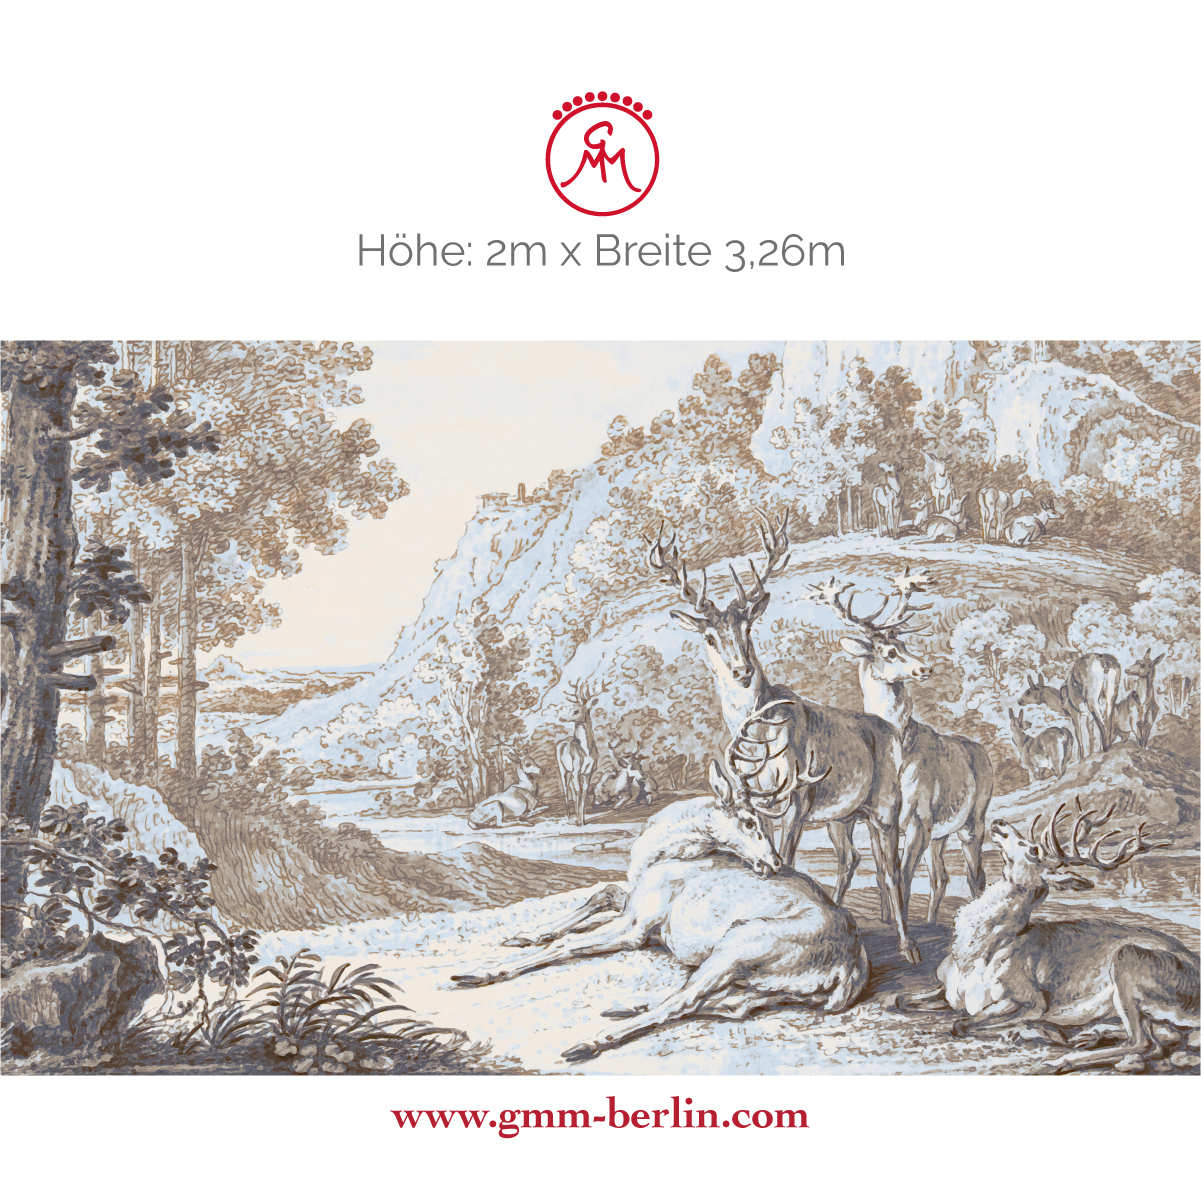 Dekorative Panorama Tapete: Klassische Kunst Tapete "Hirsche in Landschaft" nach Johann Elias Ridinger